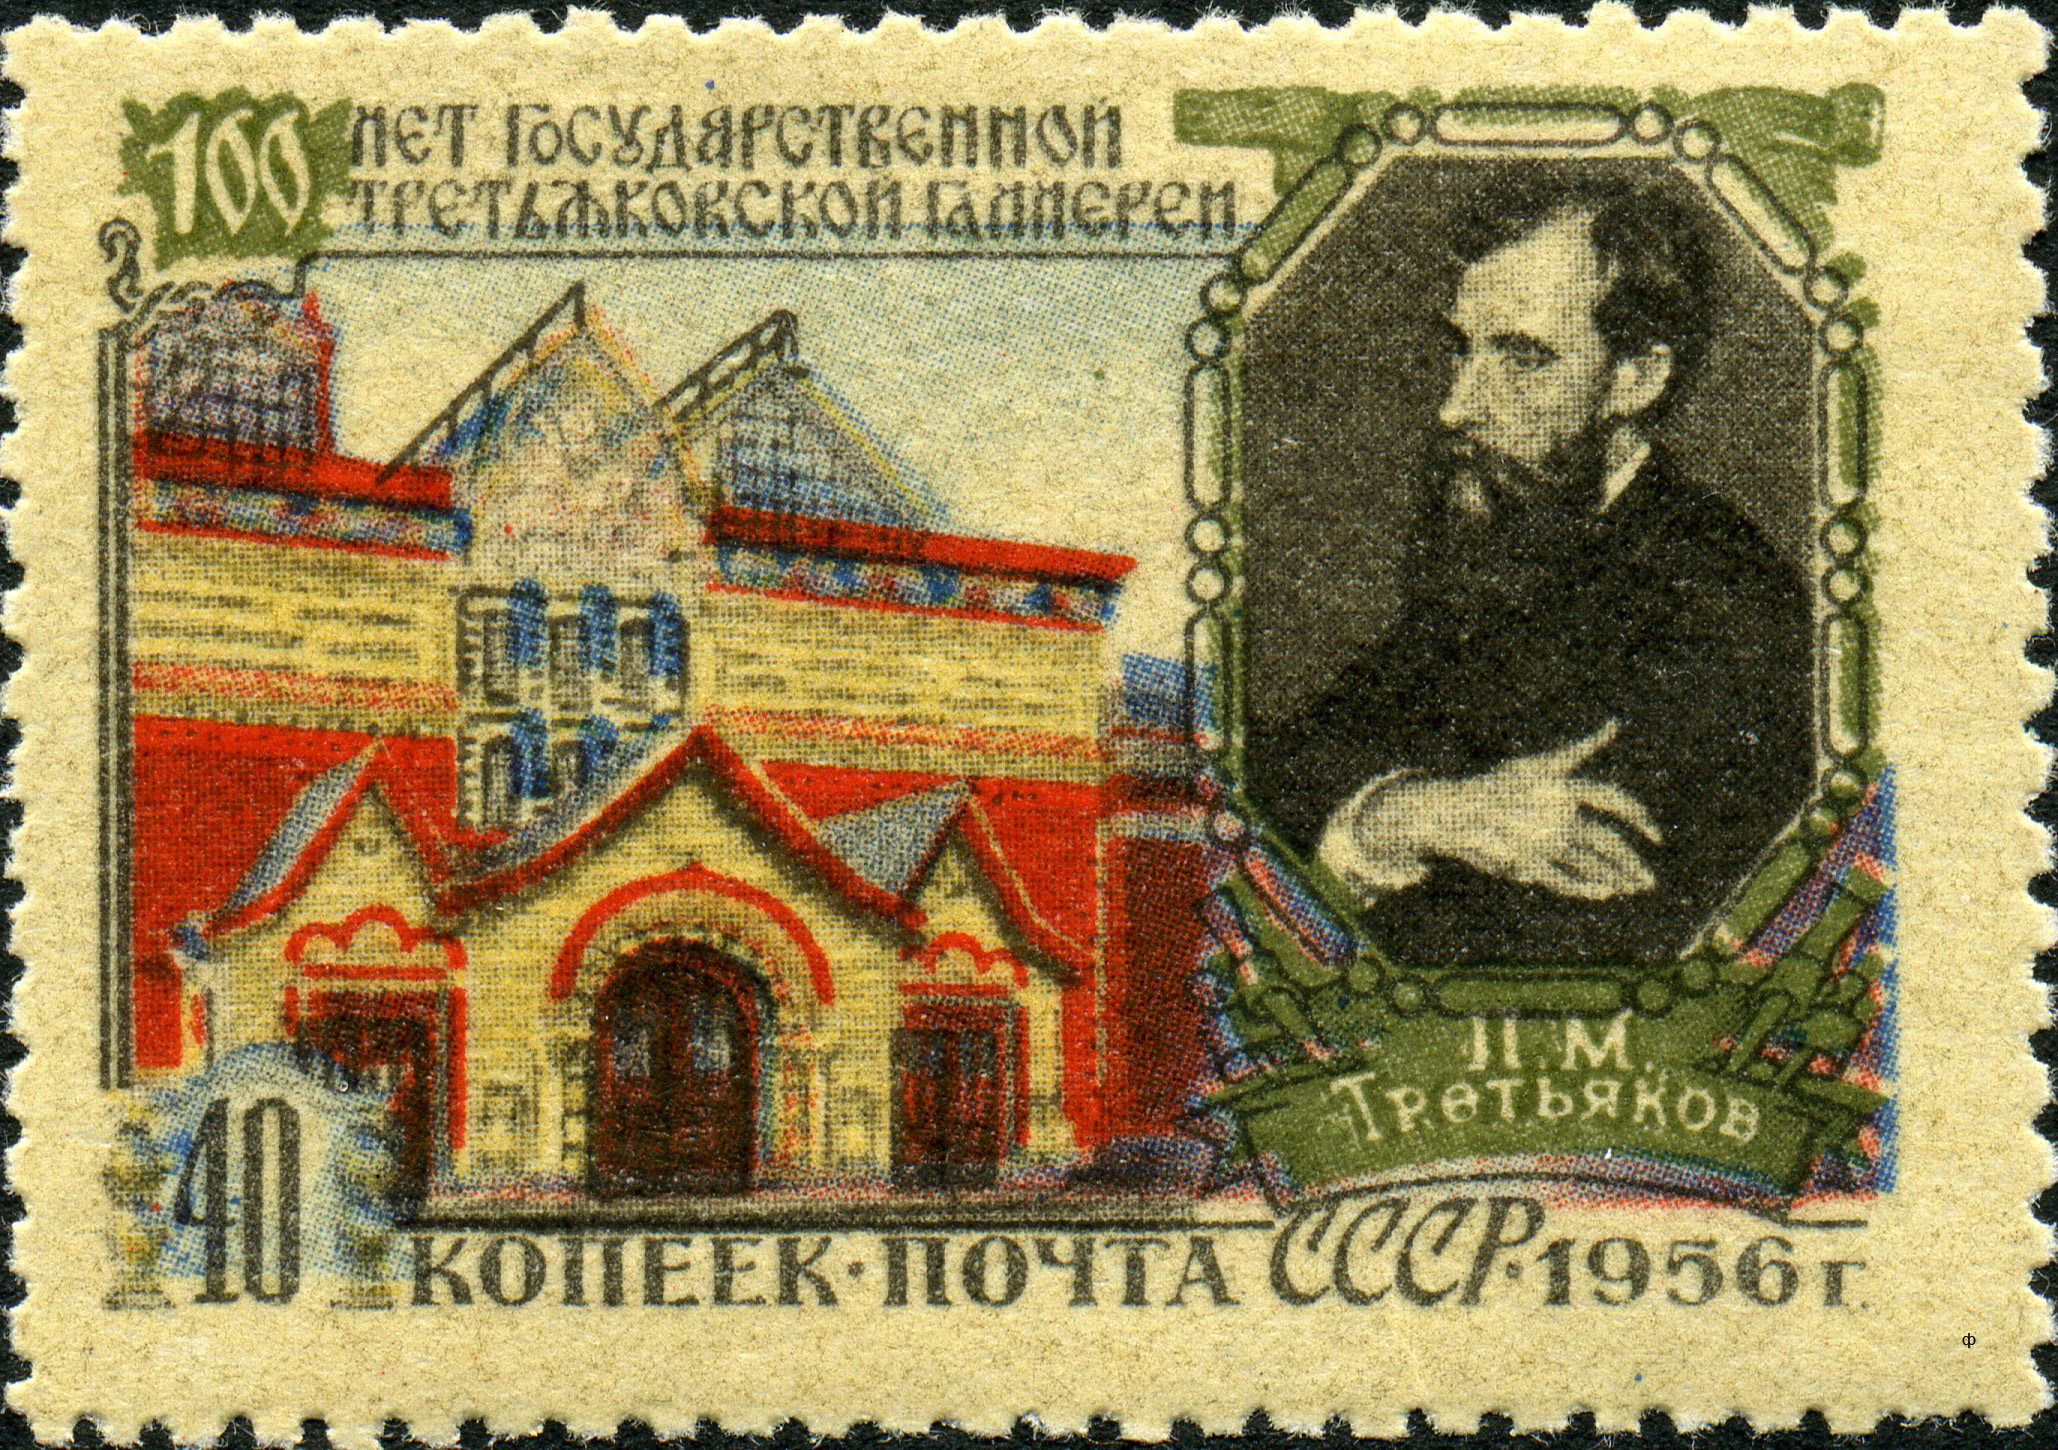 Почтовая марка, посвященная юбилею Третьяковской галереи